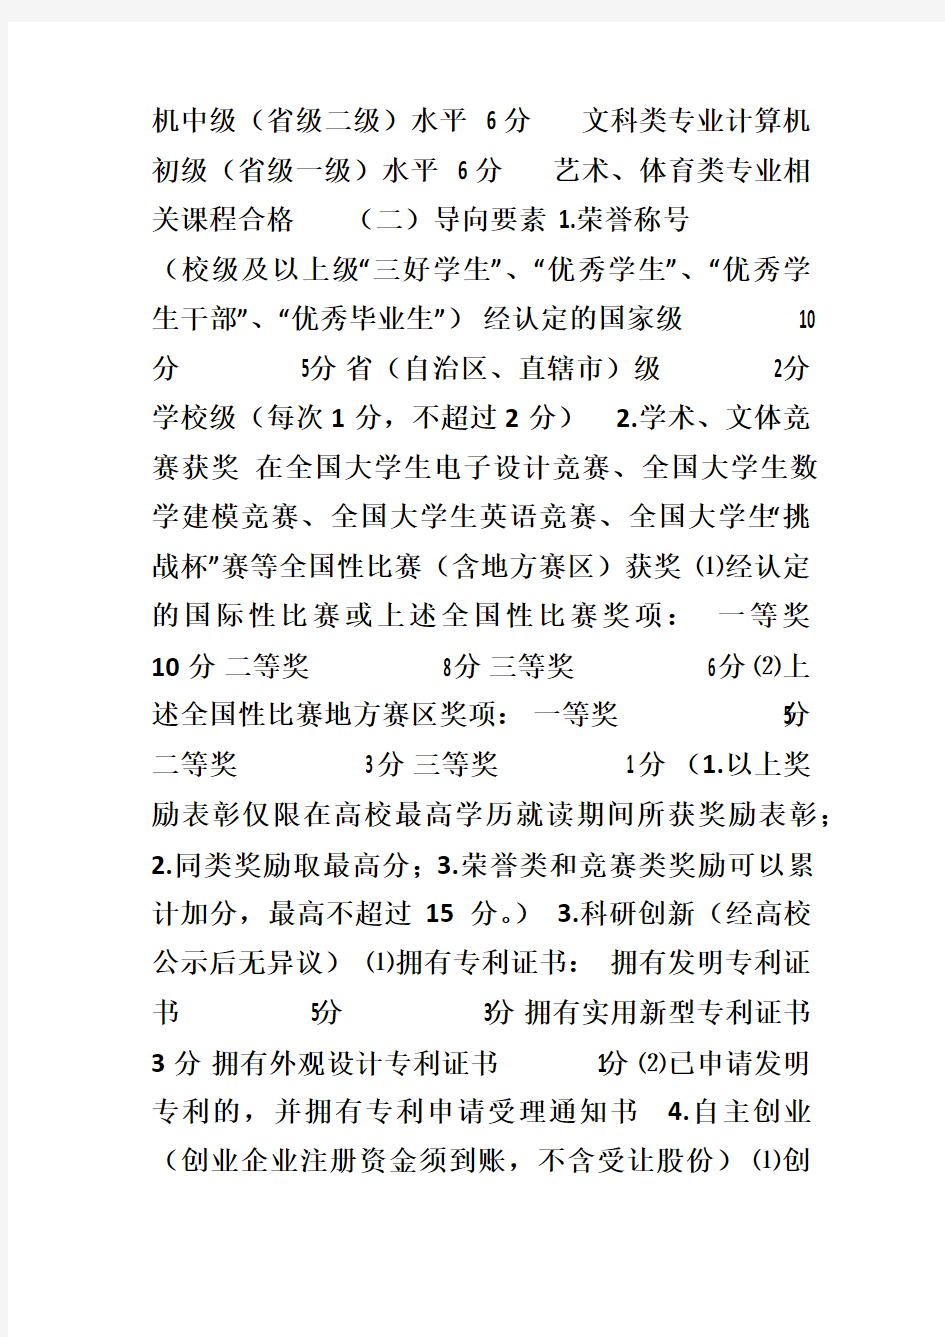 非上海生源高校毕业生进沪就业评分办法---上海户口打分标准